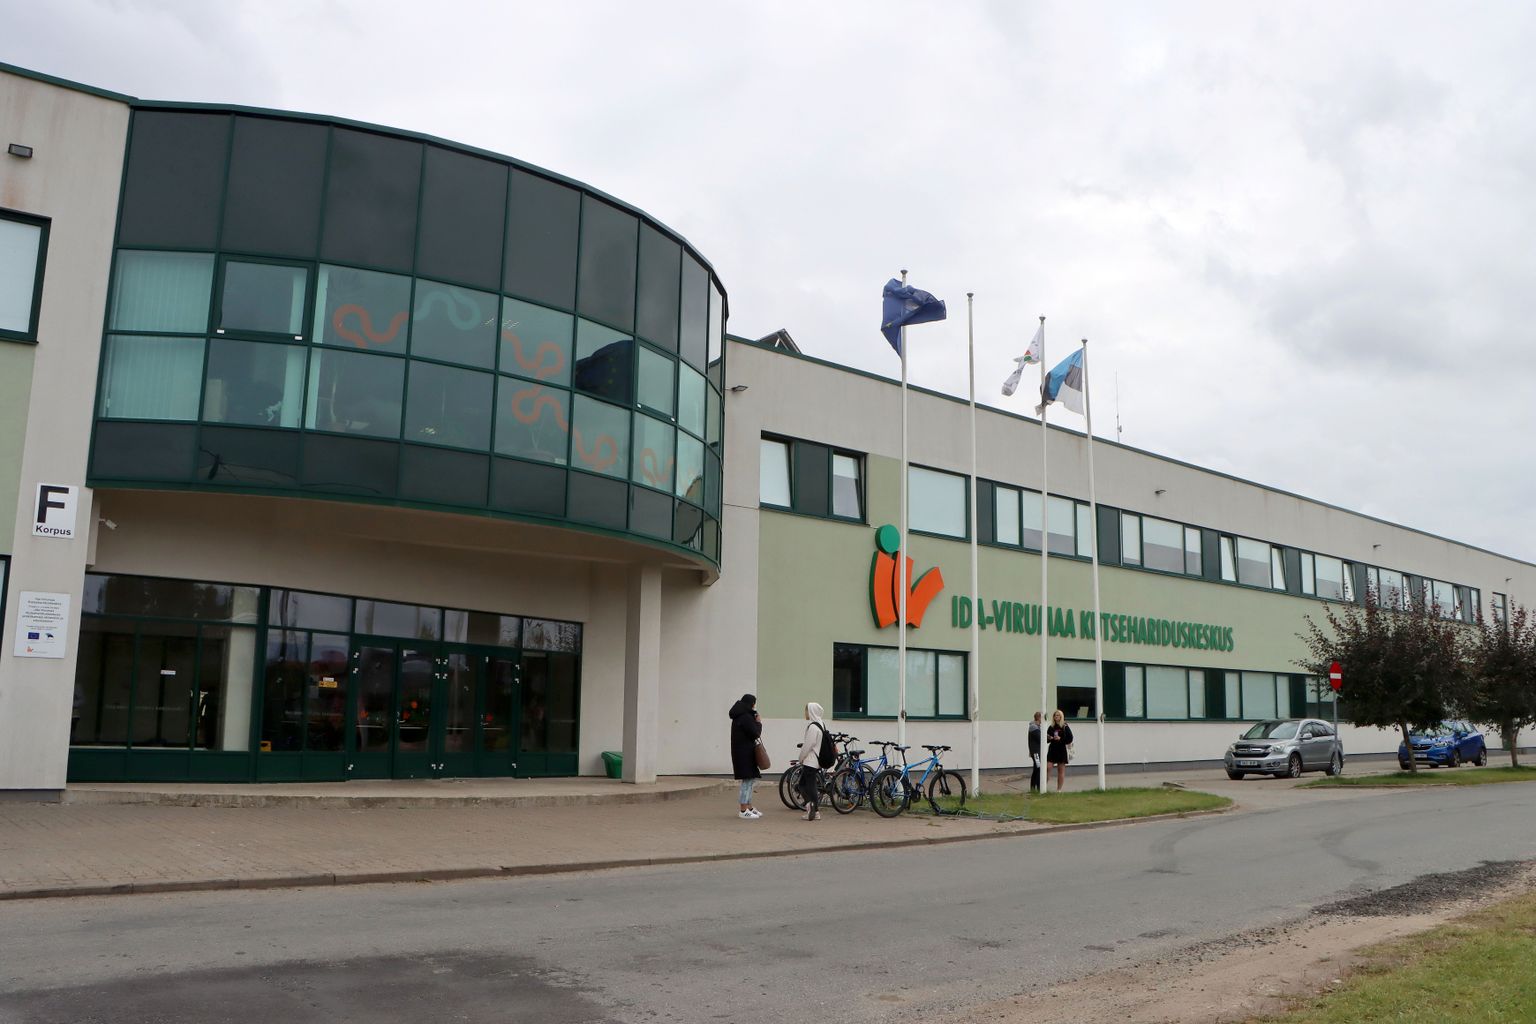 Ida-Viru kutsehariduskeskus on saanud uued hooned ja sisseseade, kuid eesti keele oskus on väga nõrk nii õpilastel kui ka õpetajatel.